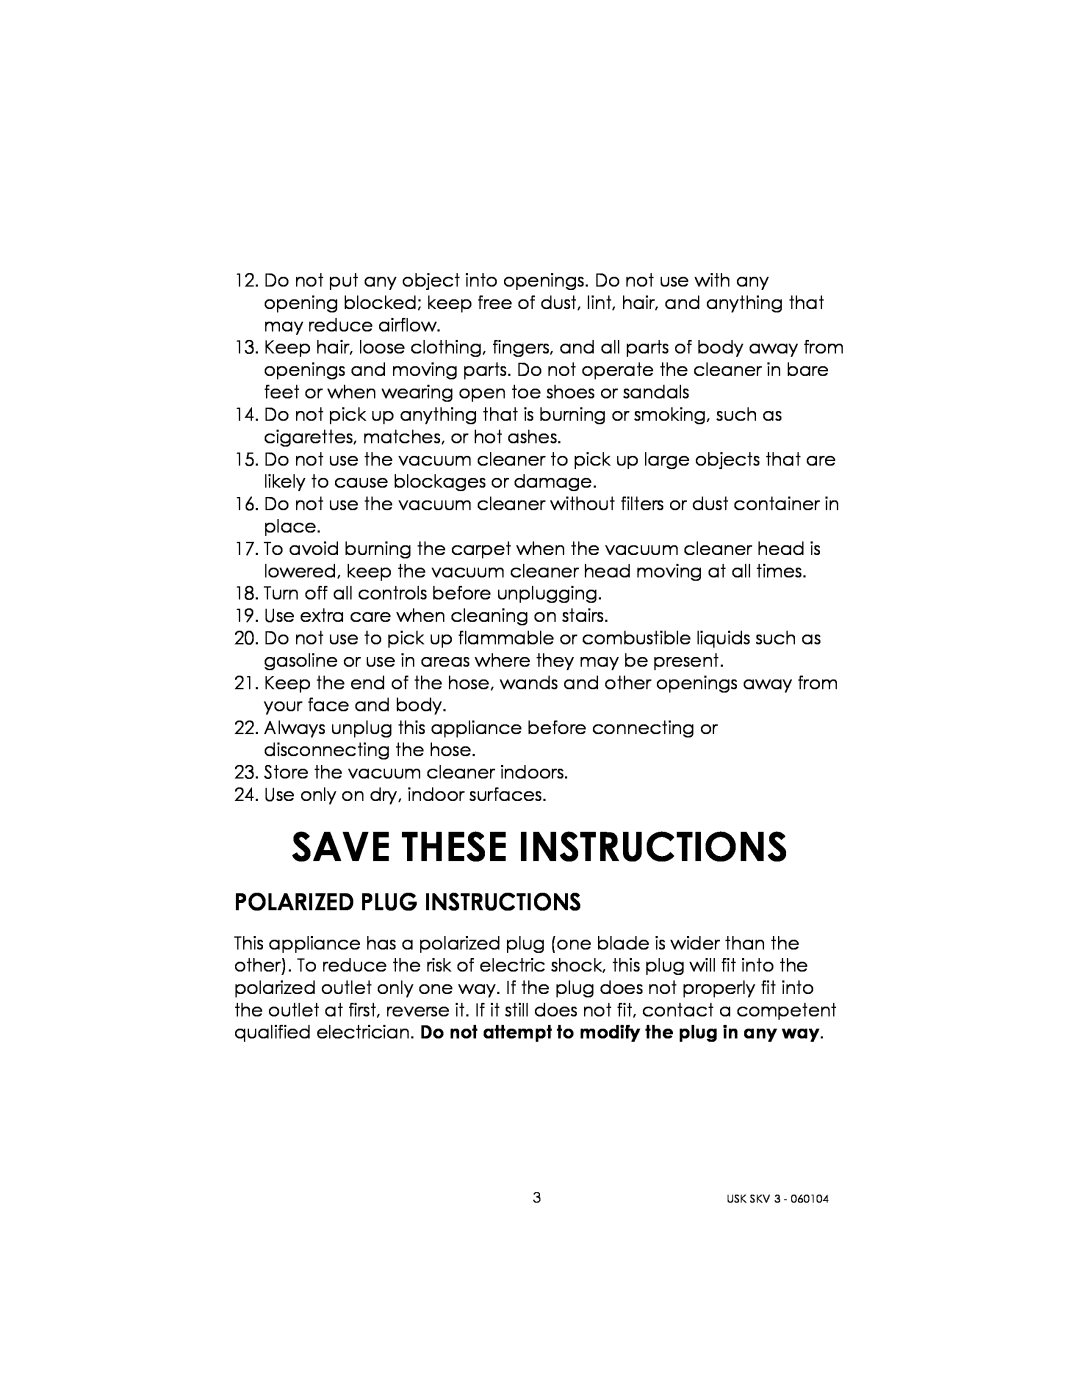 Kalorik USK SKV 3 manual Save These Instructions, Polarized Plug Instructions 